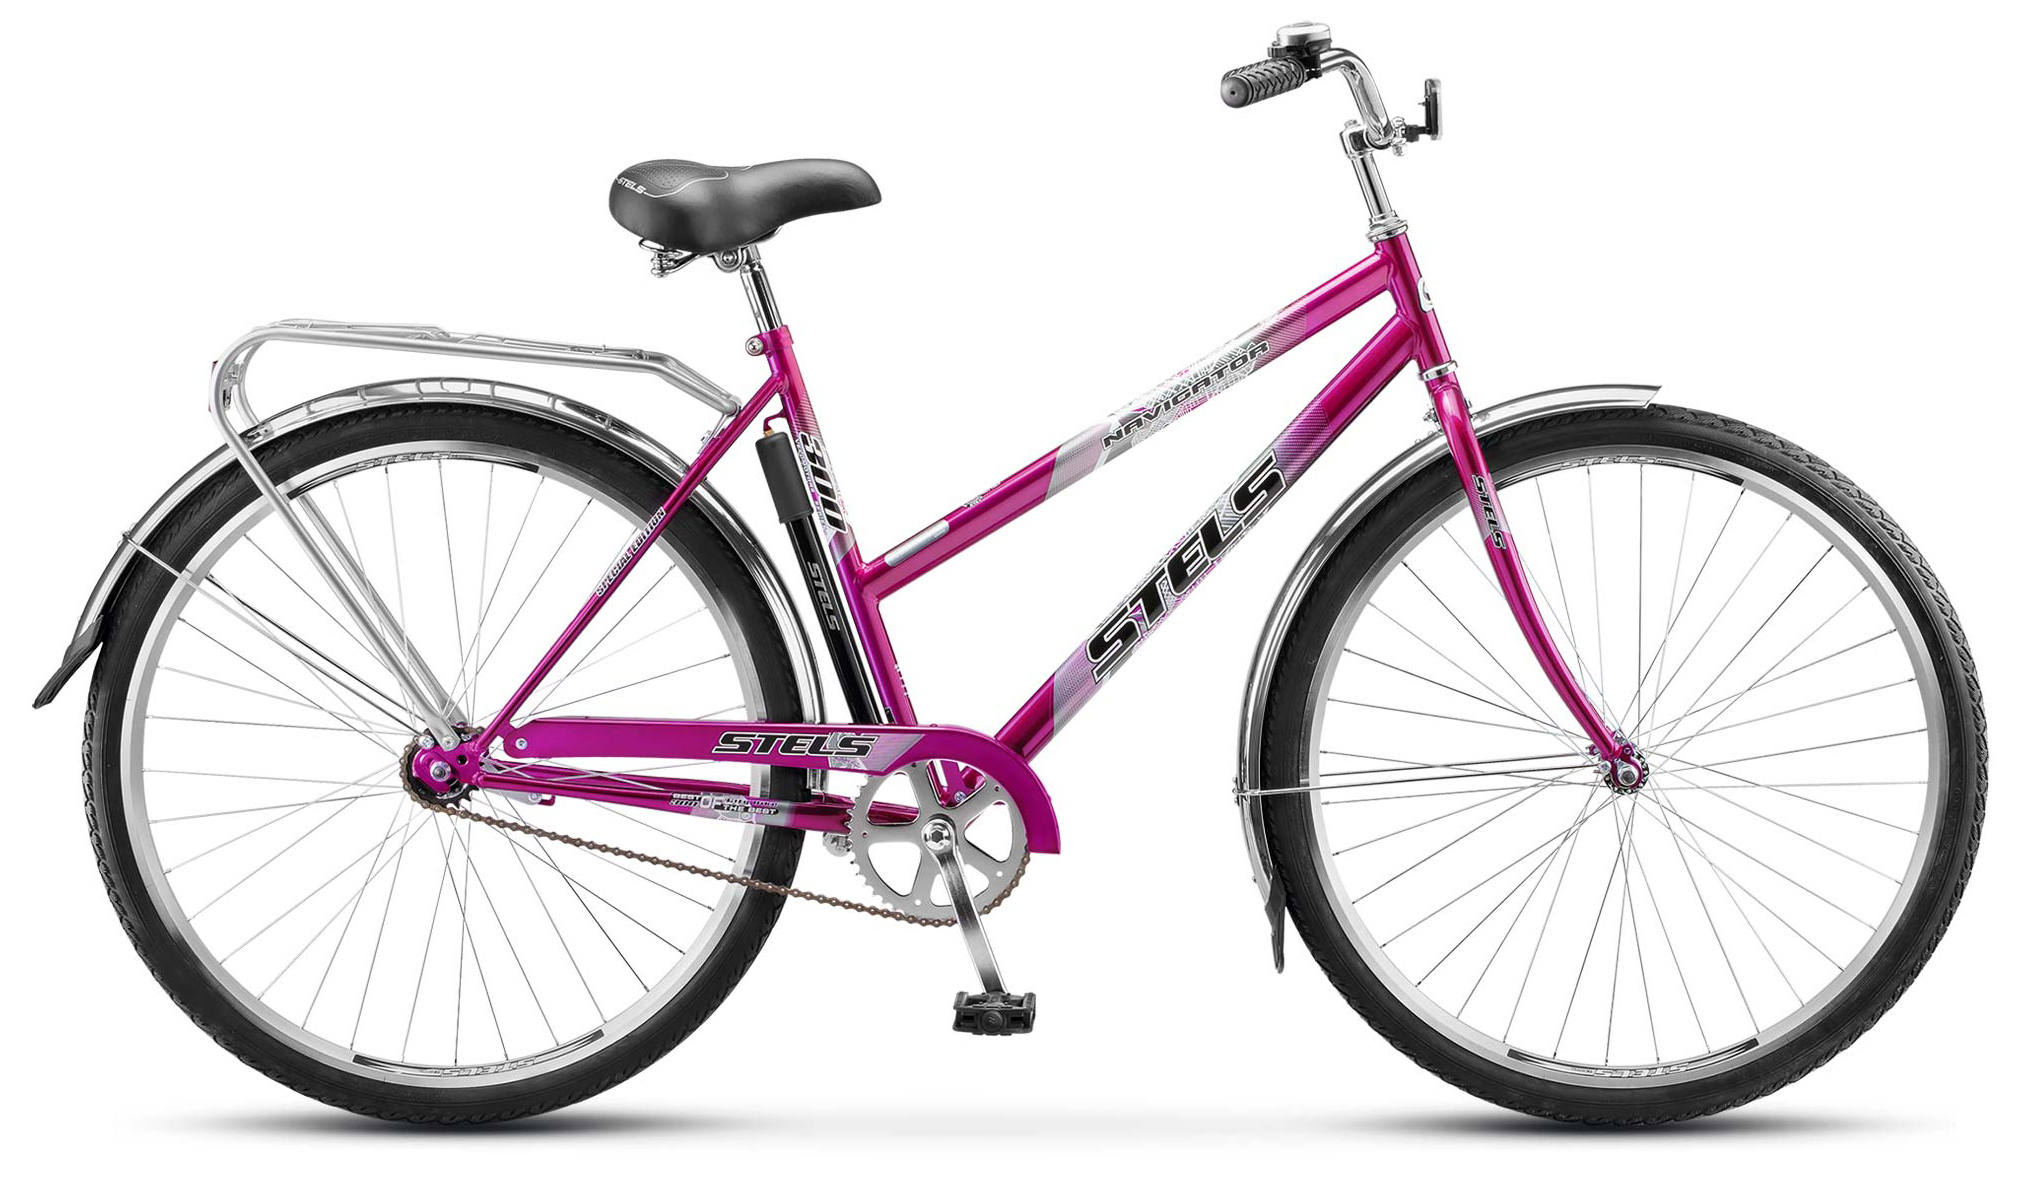  Отзывы о Женском велосипеде Stels Navigator 300 Lady 28" (Z010) 2019